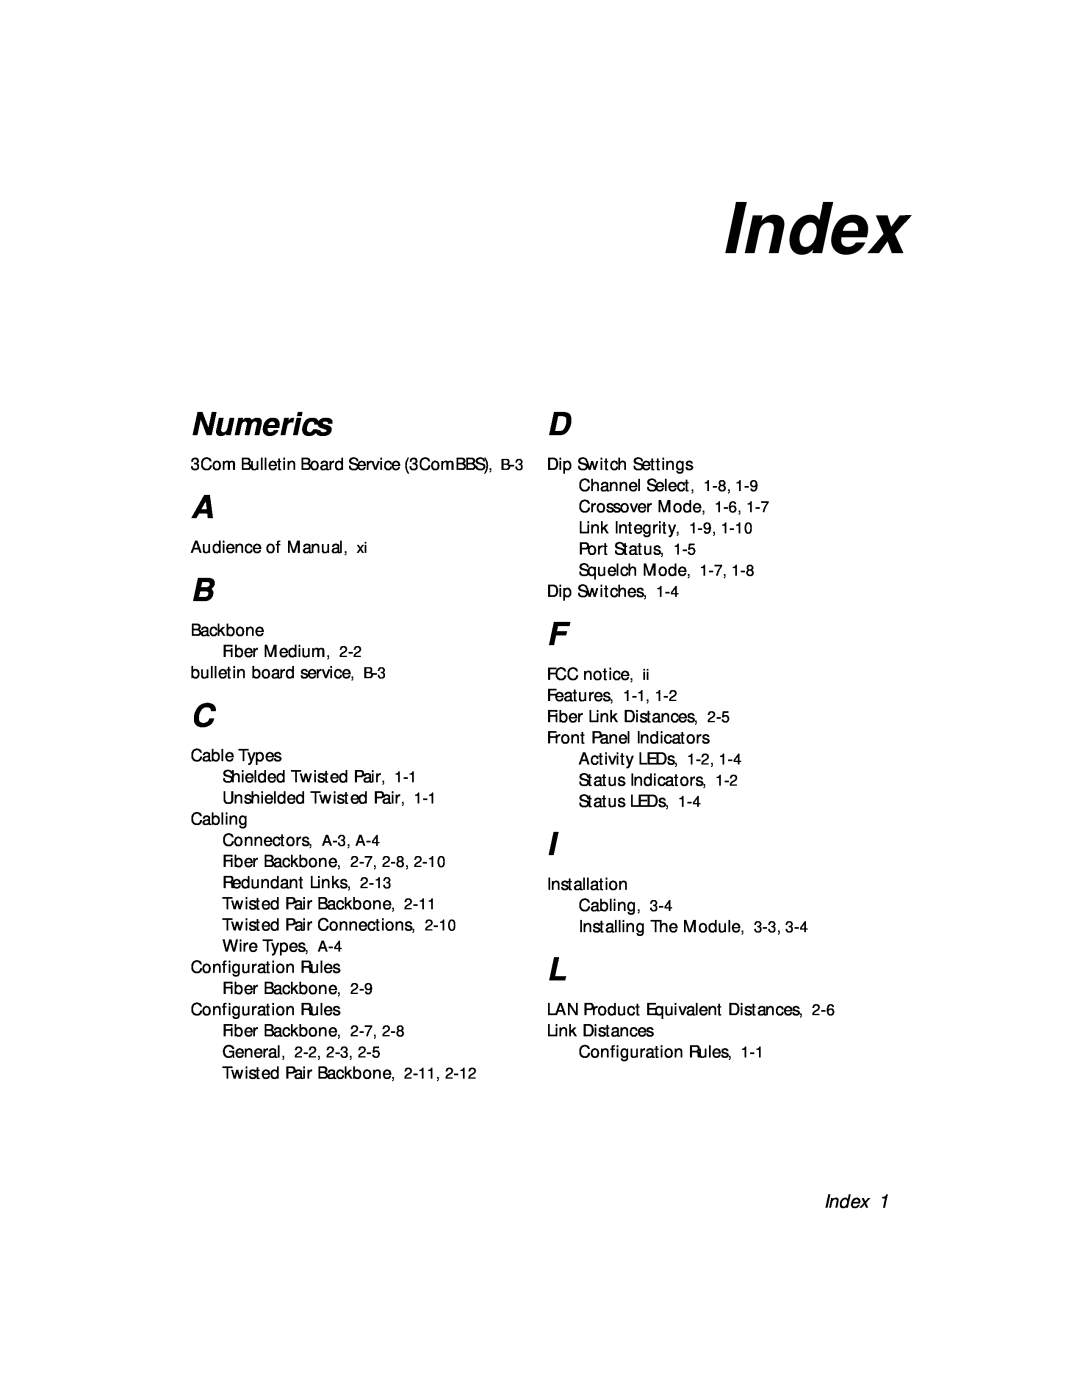 3Com 5108M-TP manual Index, Numerics 